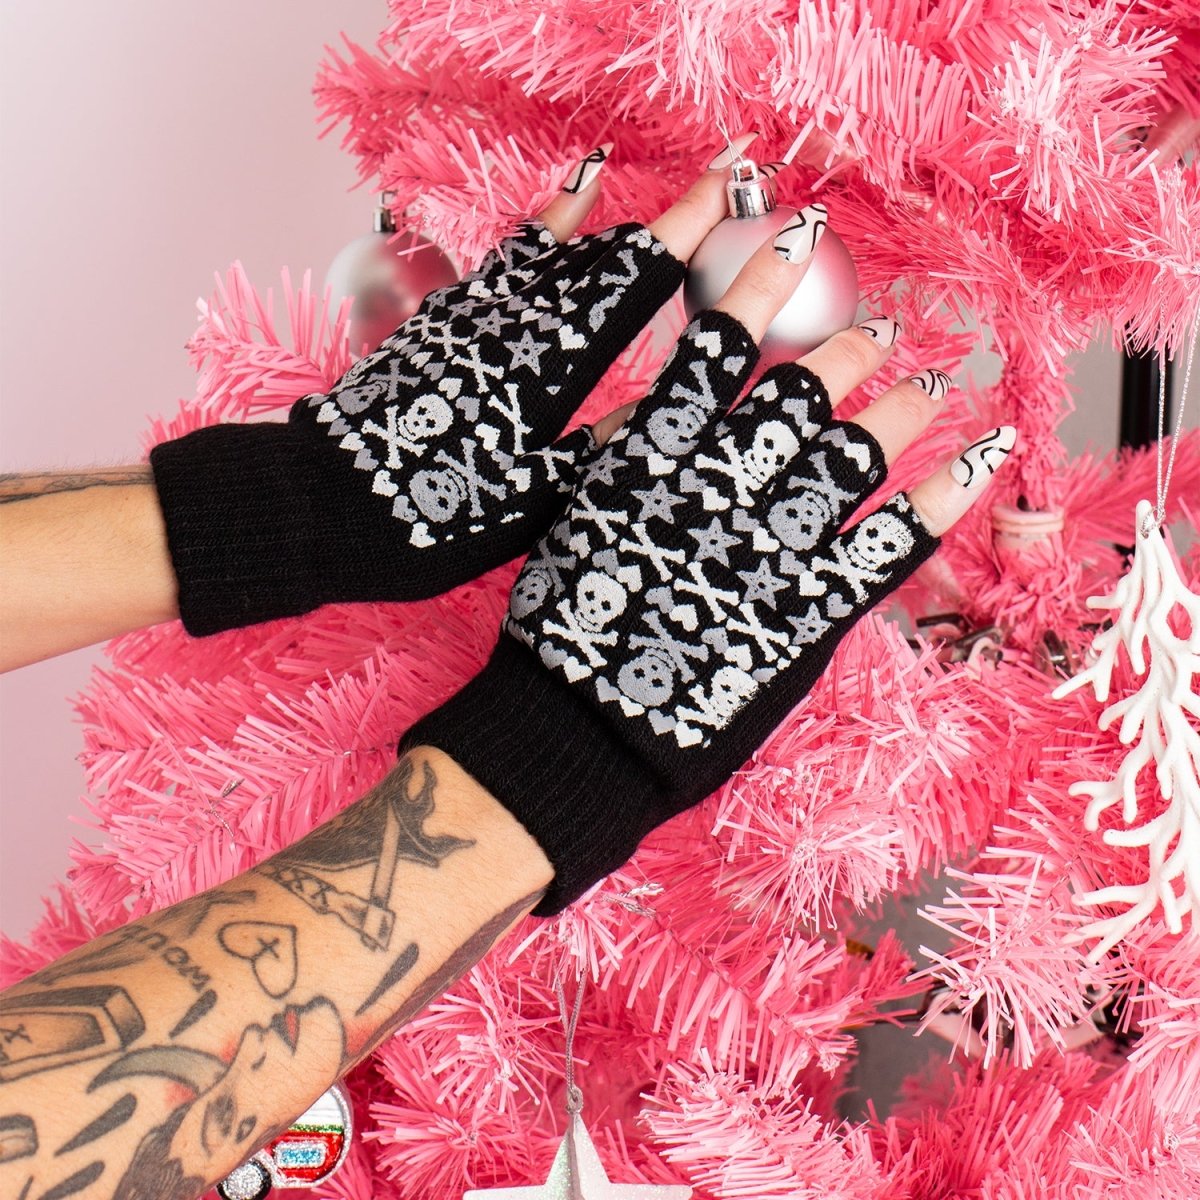 Too Fast | Christmas Skulls Fingerless Winter Knit Gloves